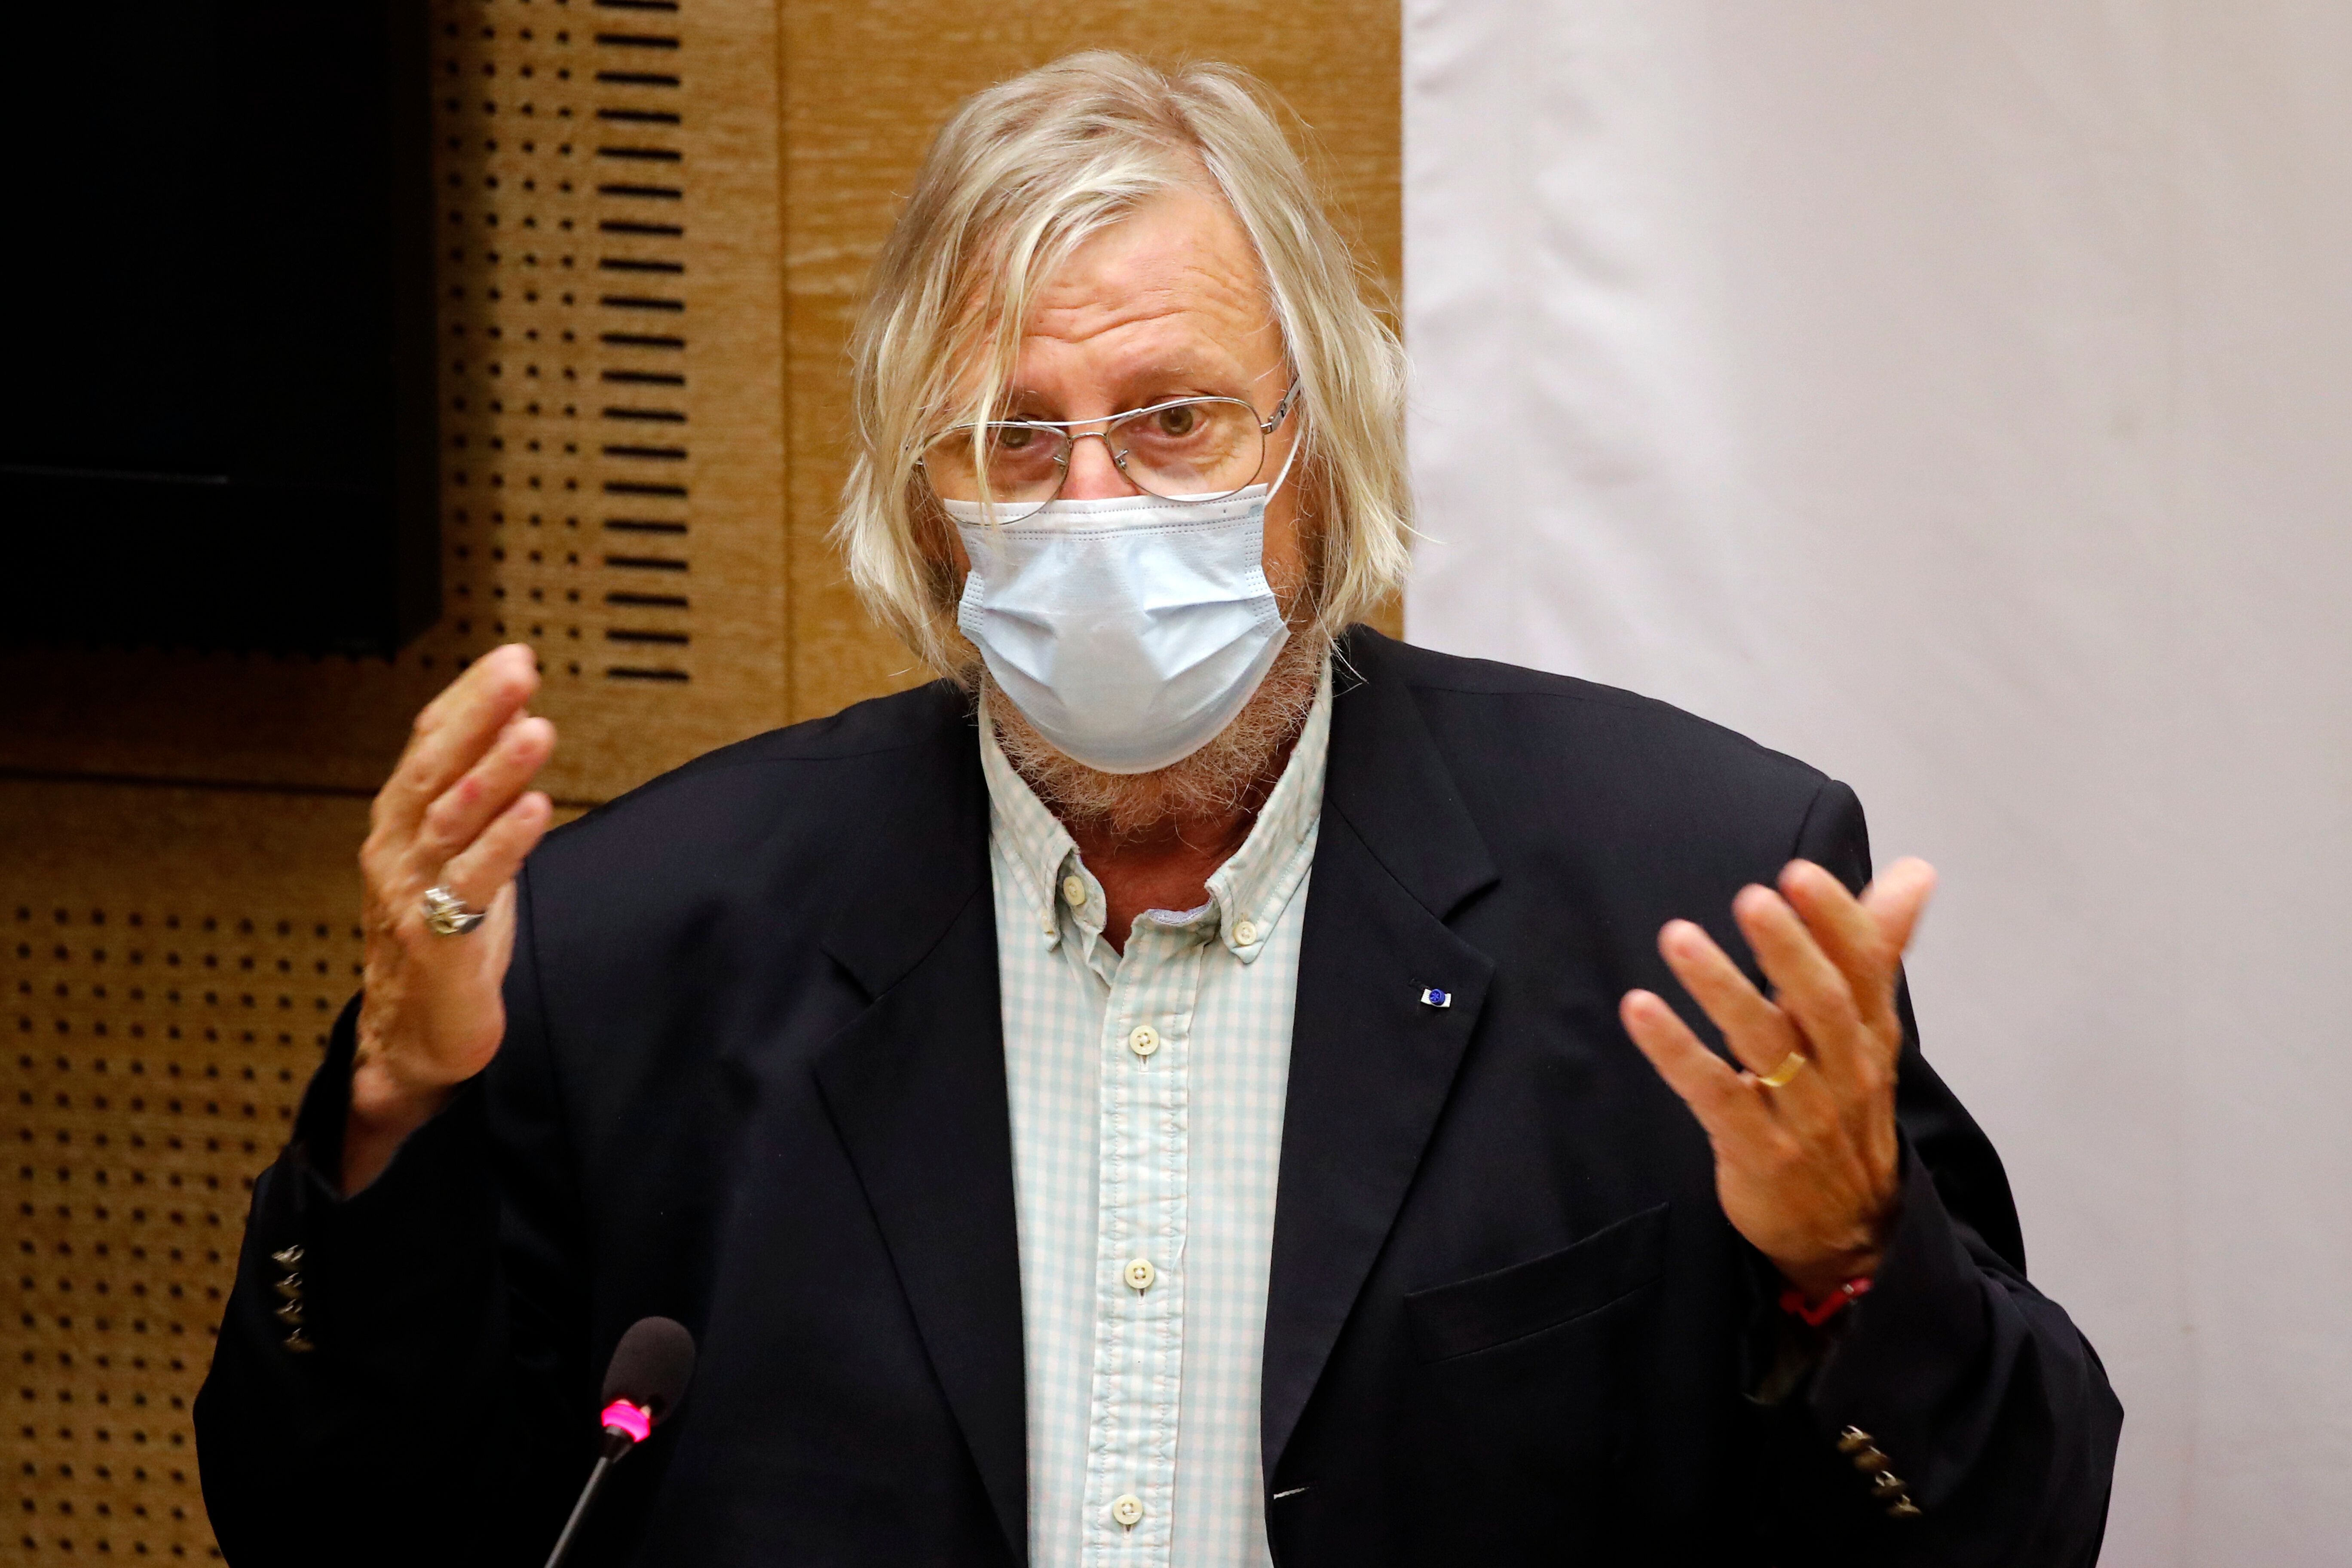 Didier Raoult lors d'une audition face aux sénateurs le 15 septembre 2020 (AP Photo/Francois